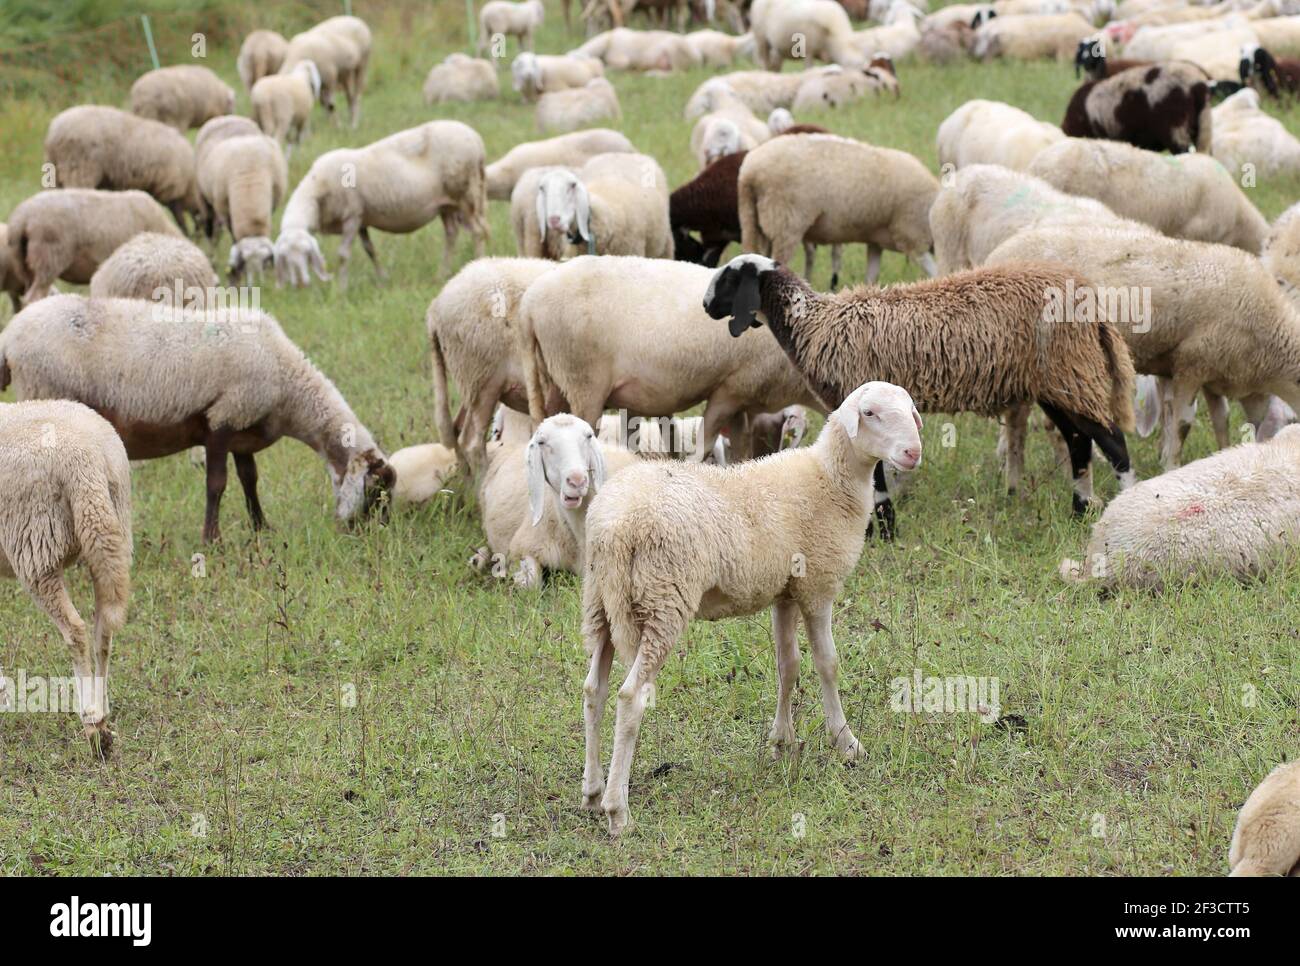 LA INMUNIDAD de la manada contra enfermedades y virus representó como muchos ovejas pastando Foto de stock